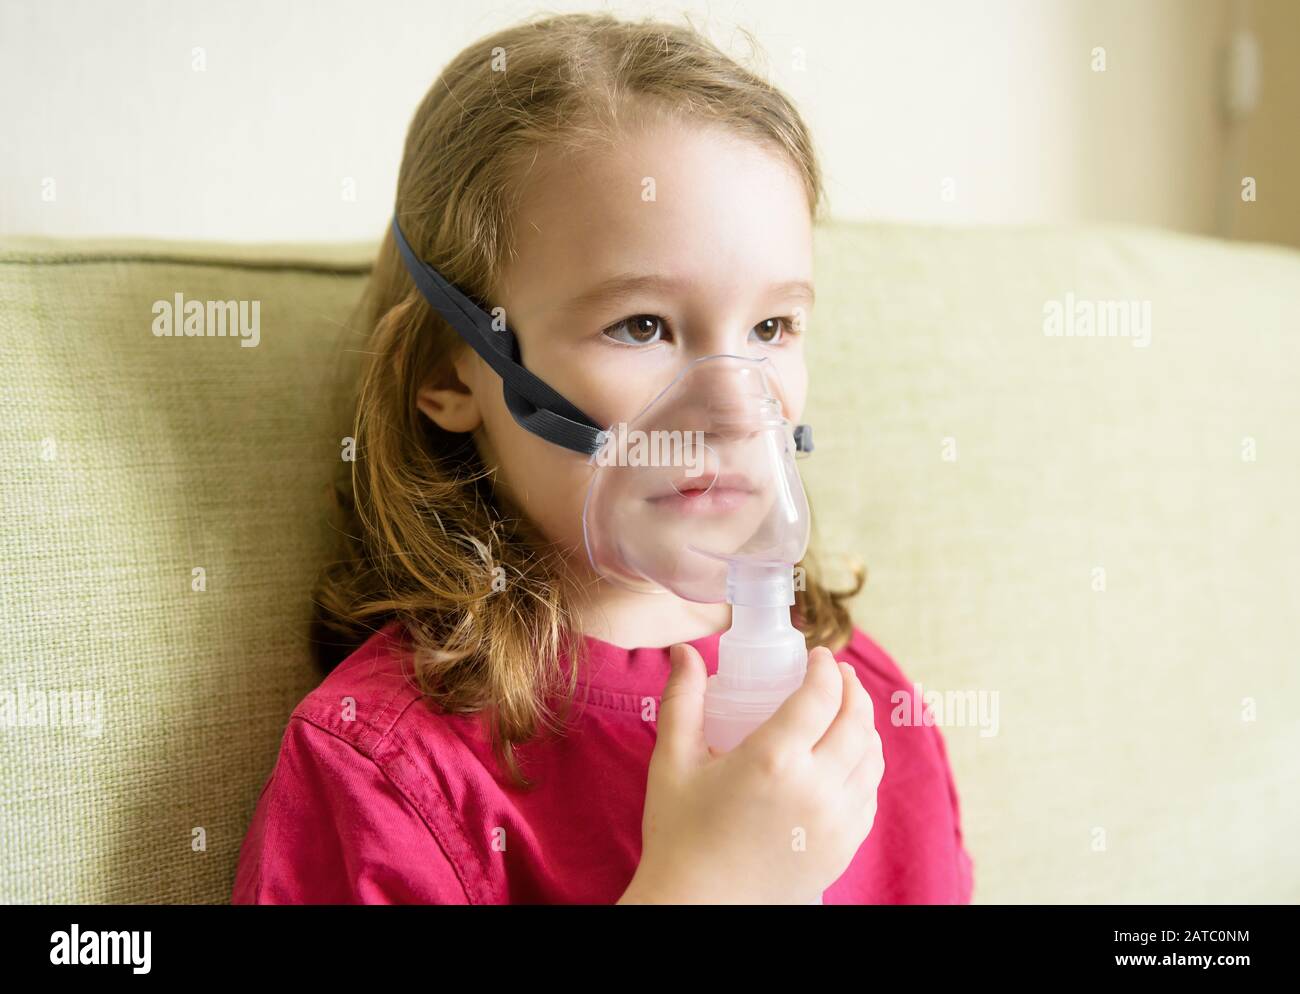 El Bebé Enfermo Y Pone El ` T Quiere Utilizar La Máscara Del Nebulizador  Que Hace La Inhalación, El Procedimiento Respiratorio Po Foto de archivo -  Imagen de basura, salud: 128481234